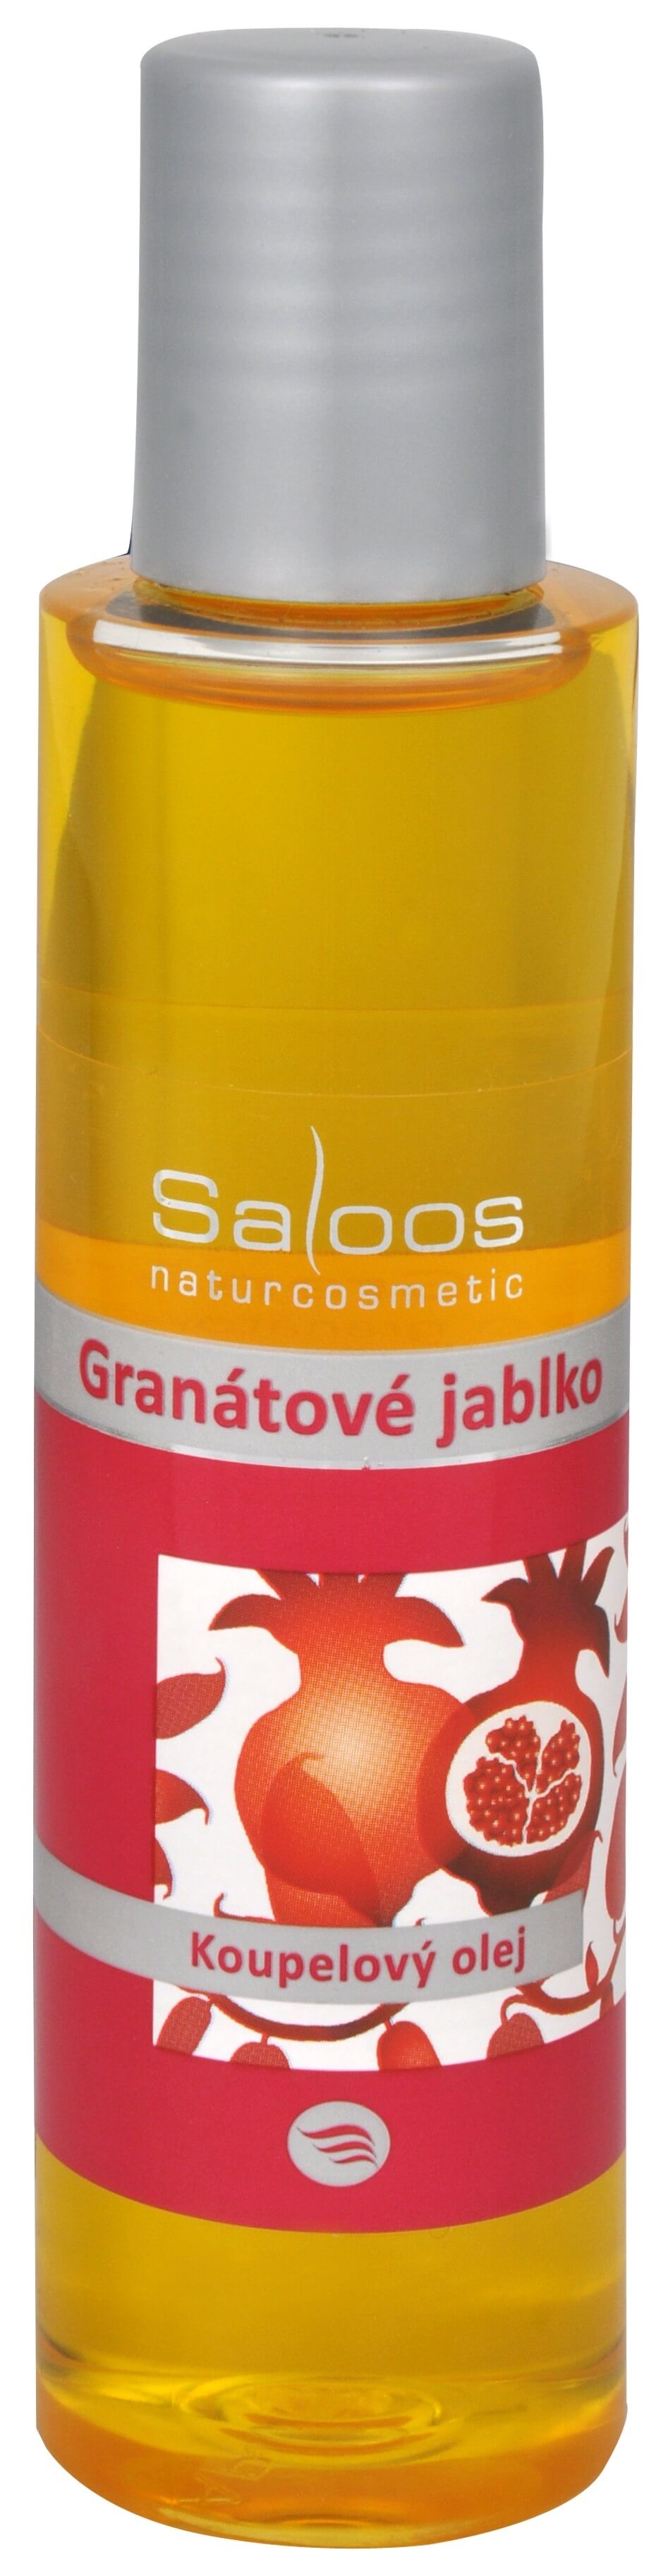 Saloos Koupelový olej - Granátové jablko 125 ml